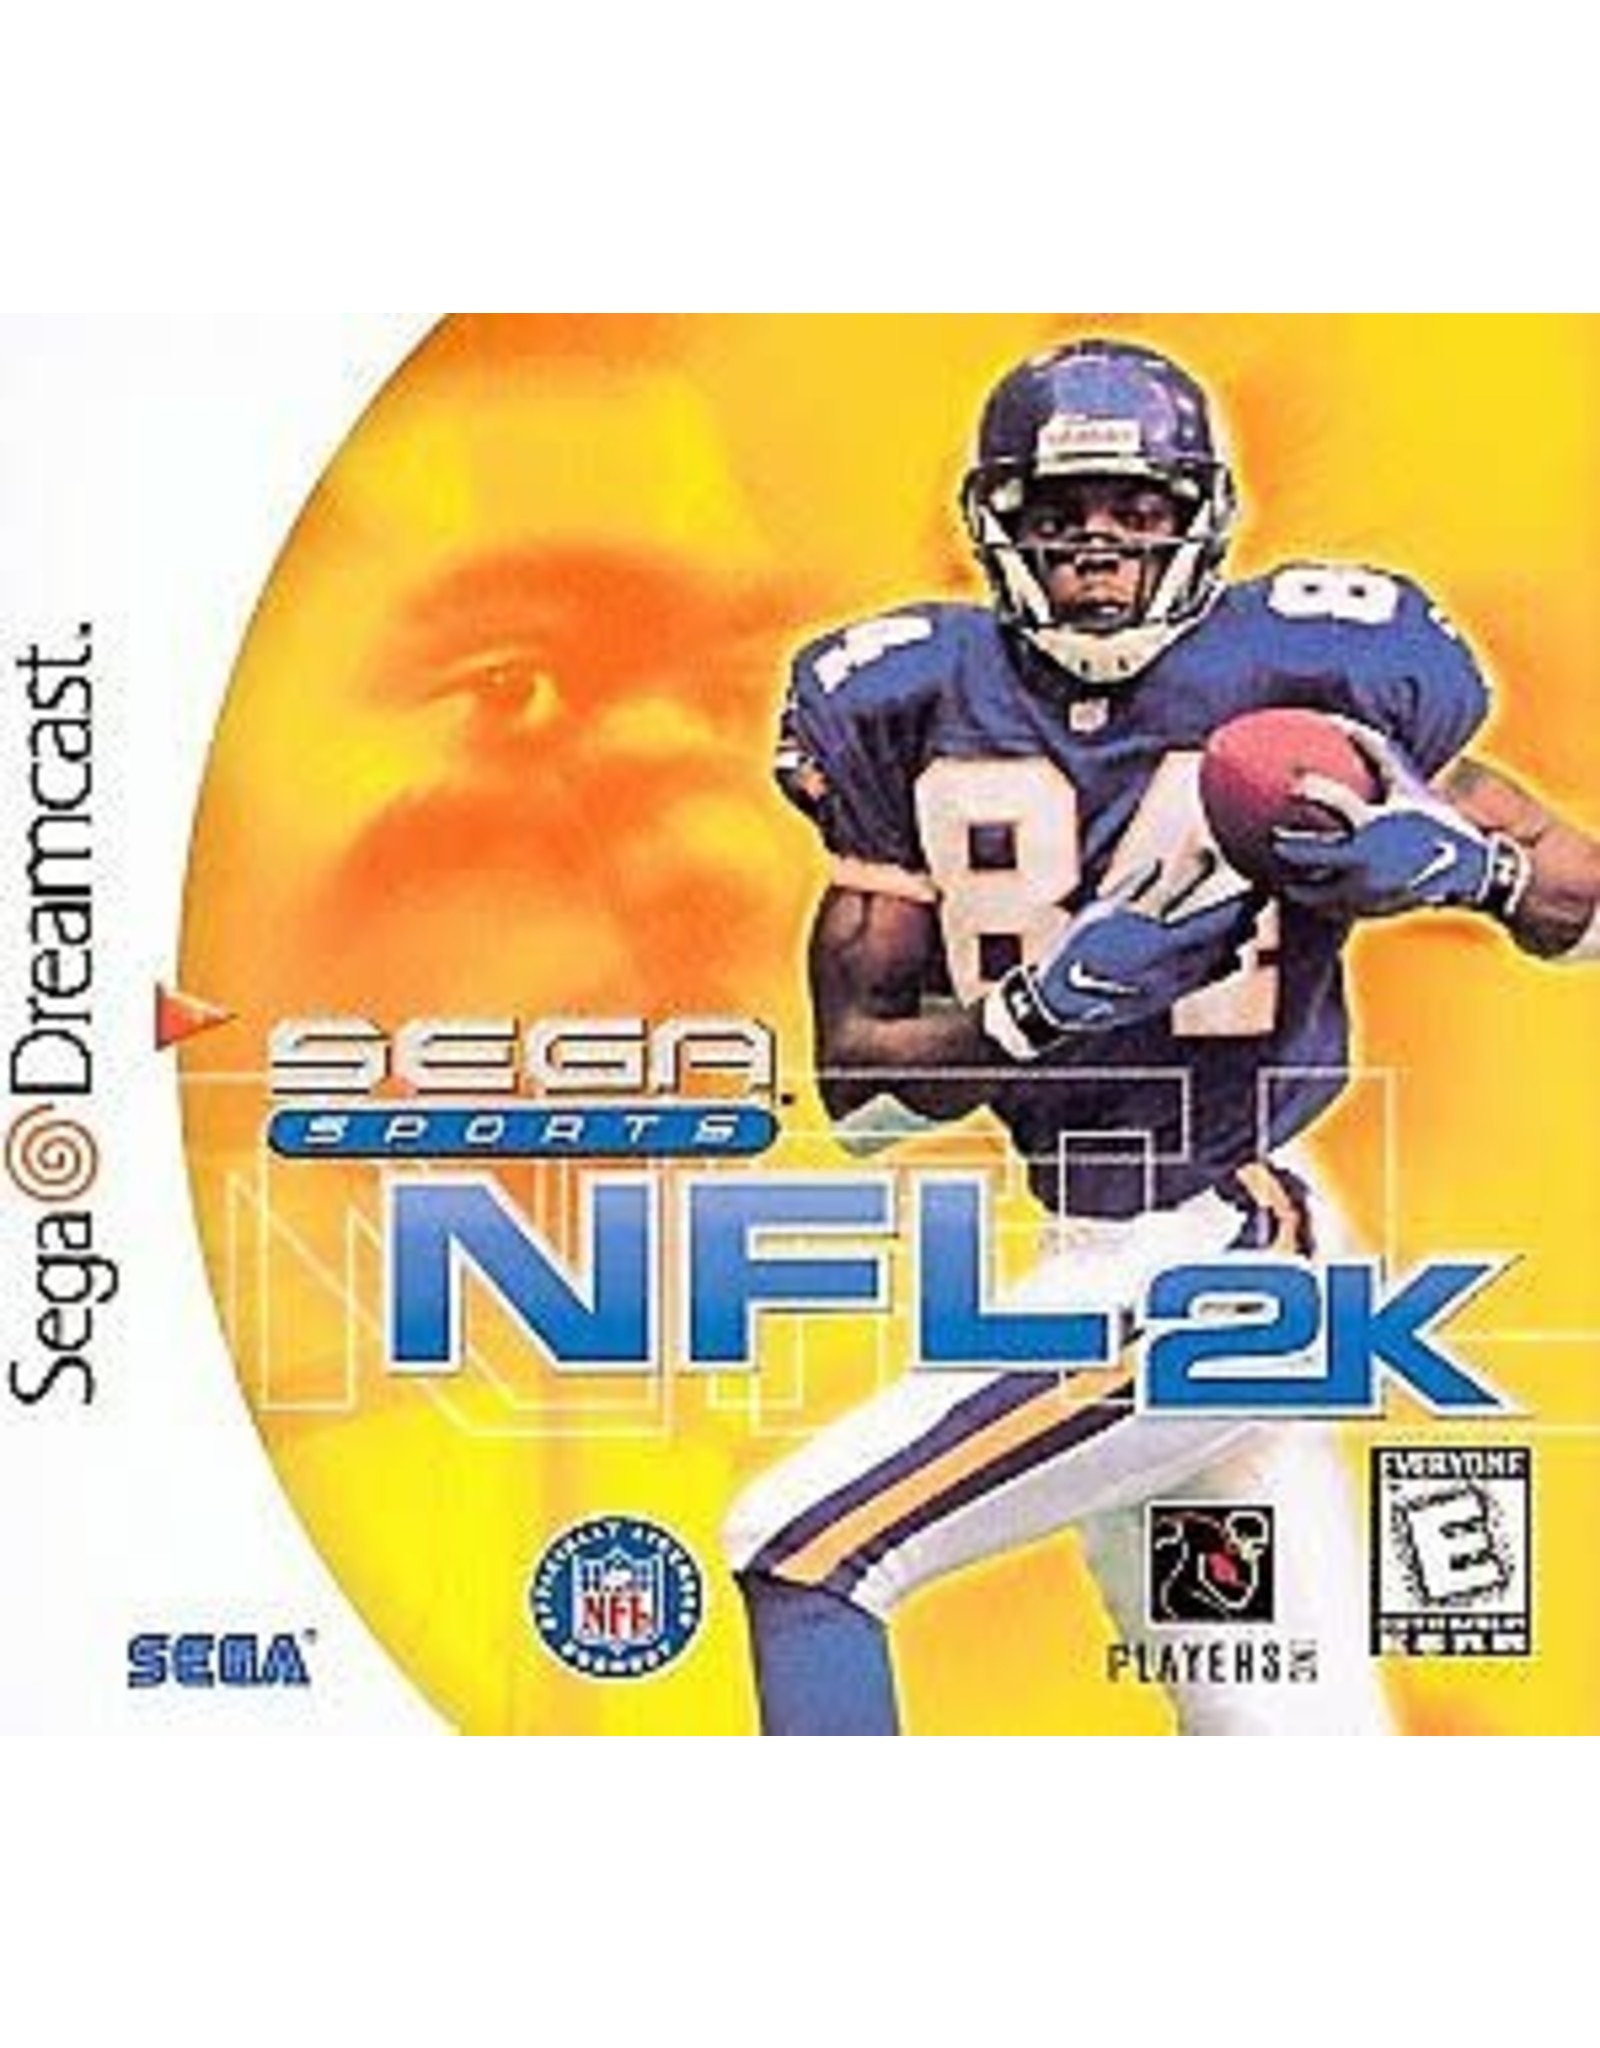 Sega Dreamcast NFL 2K (CiB)